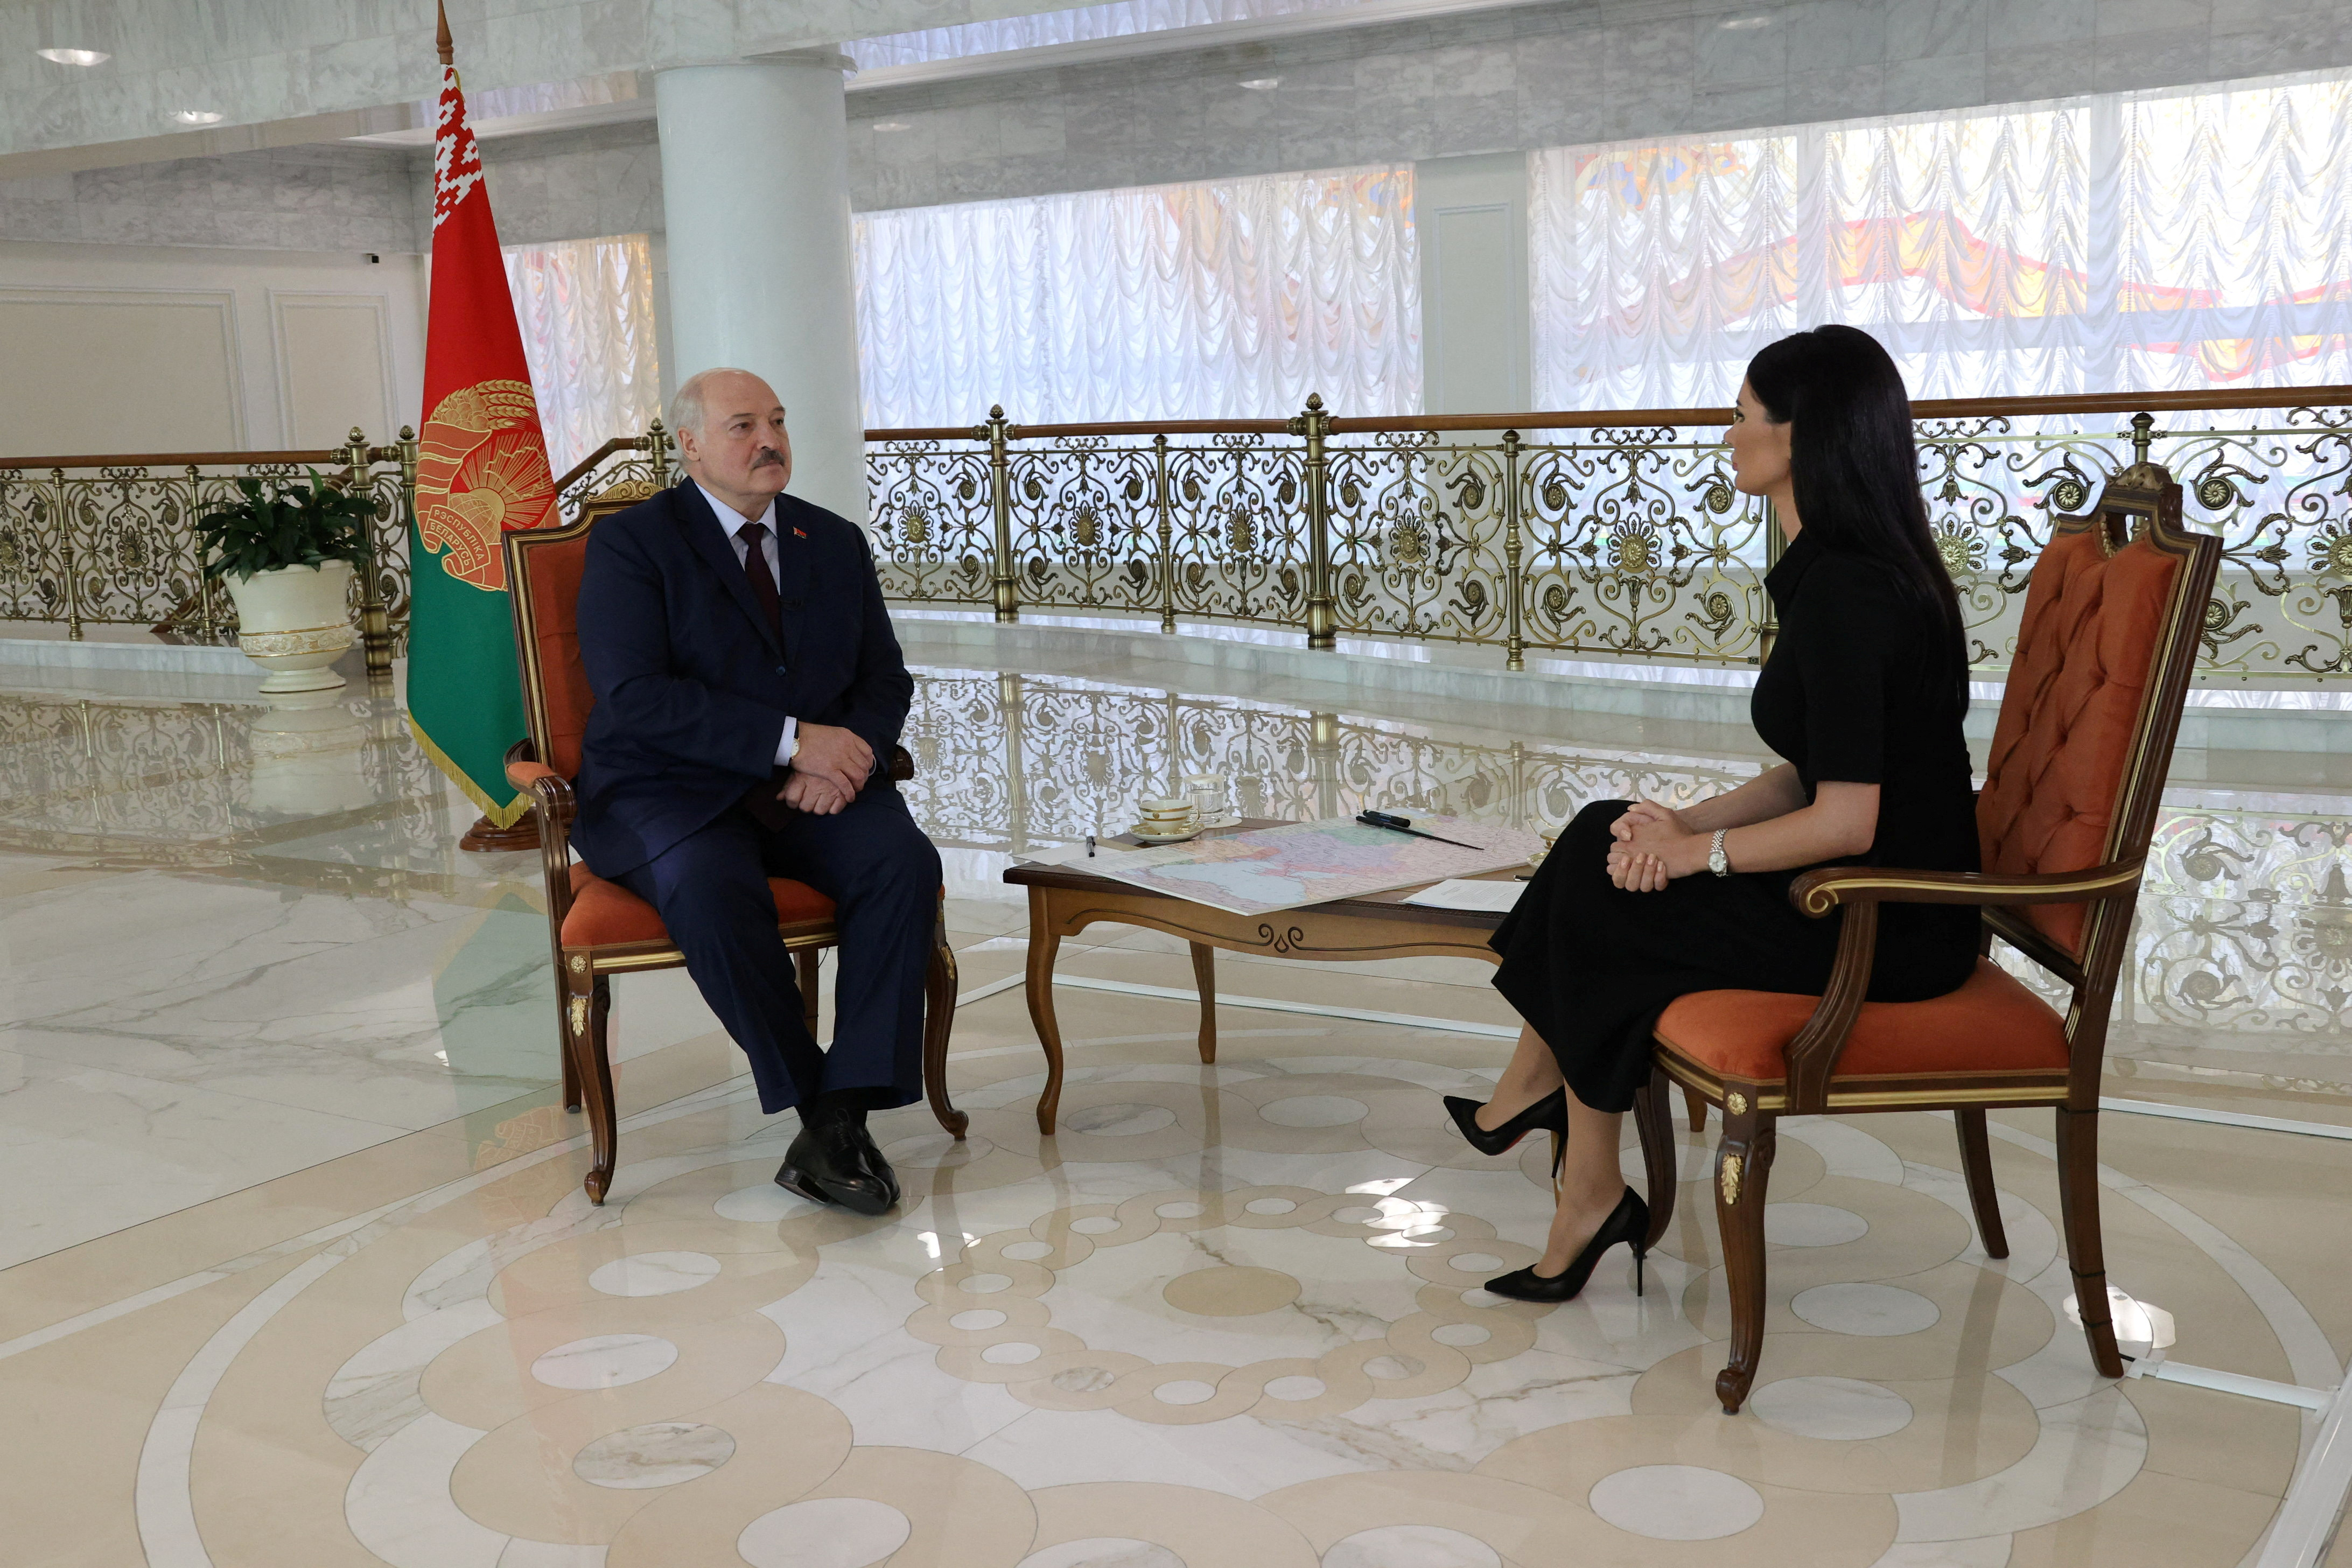 image Putin not pushing Belarus to enter war with Ukraine, says Lukashenko